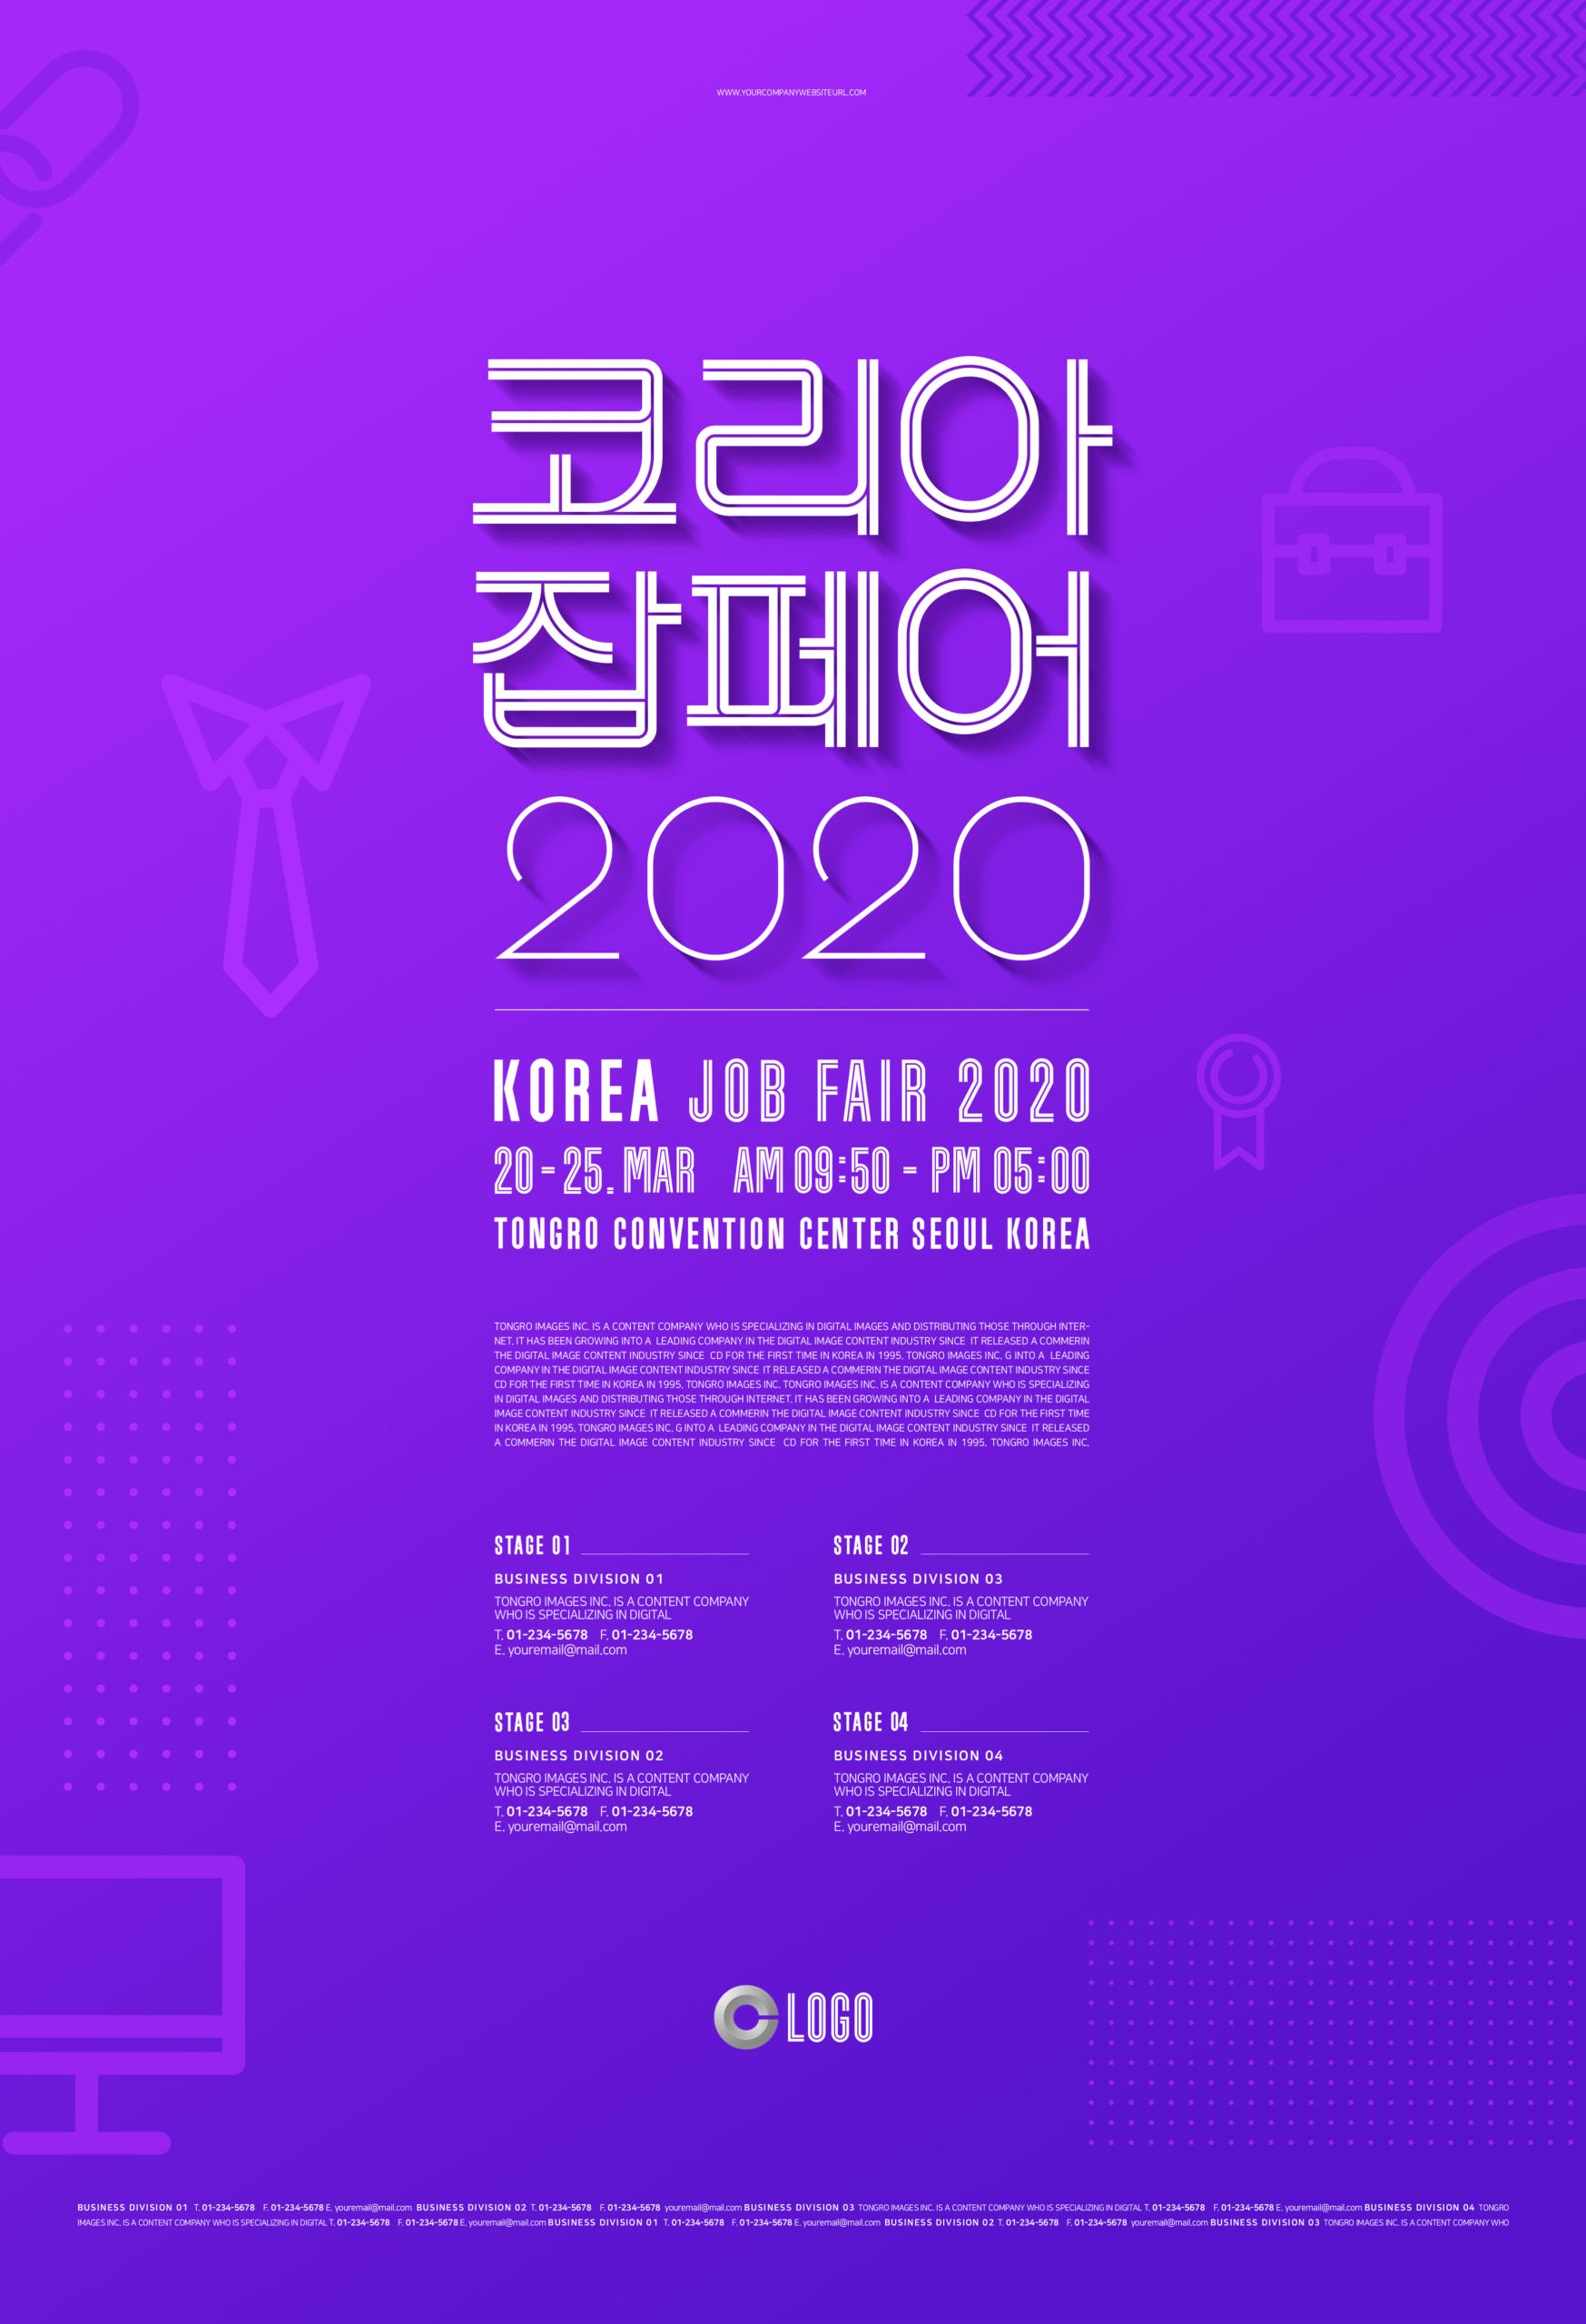 2020年精英人才招聘会/应聘活动宣传海报套装插图